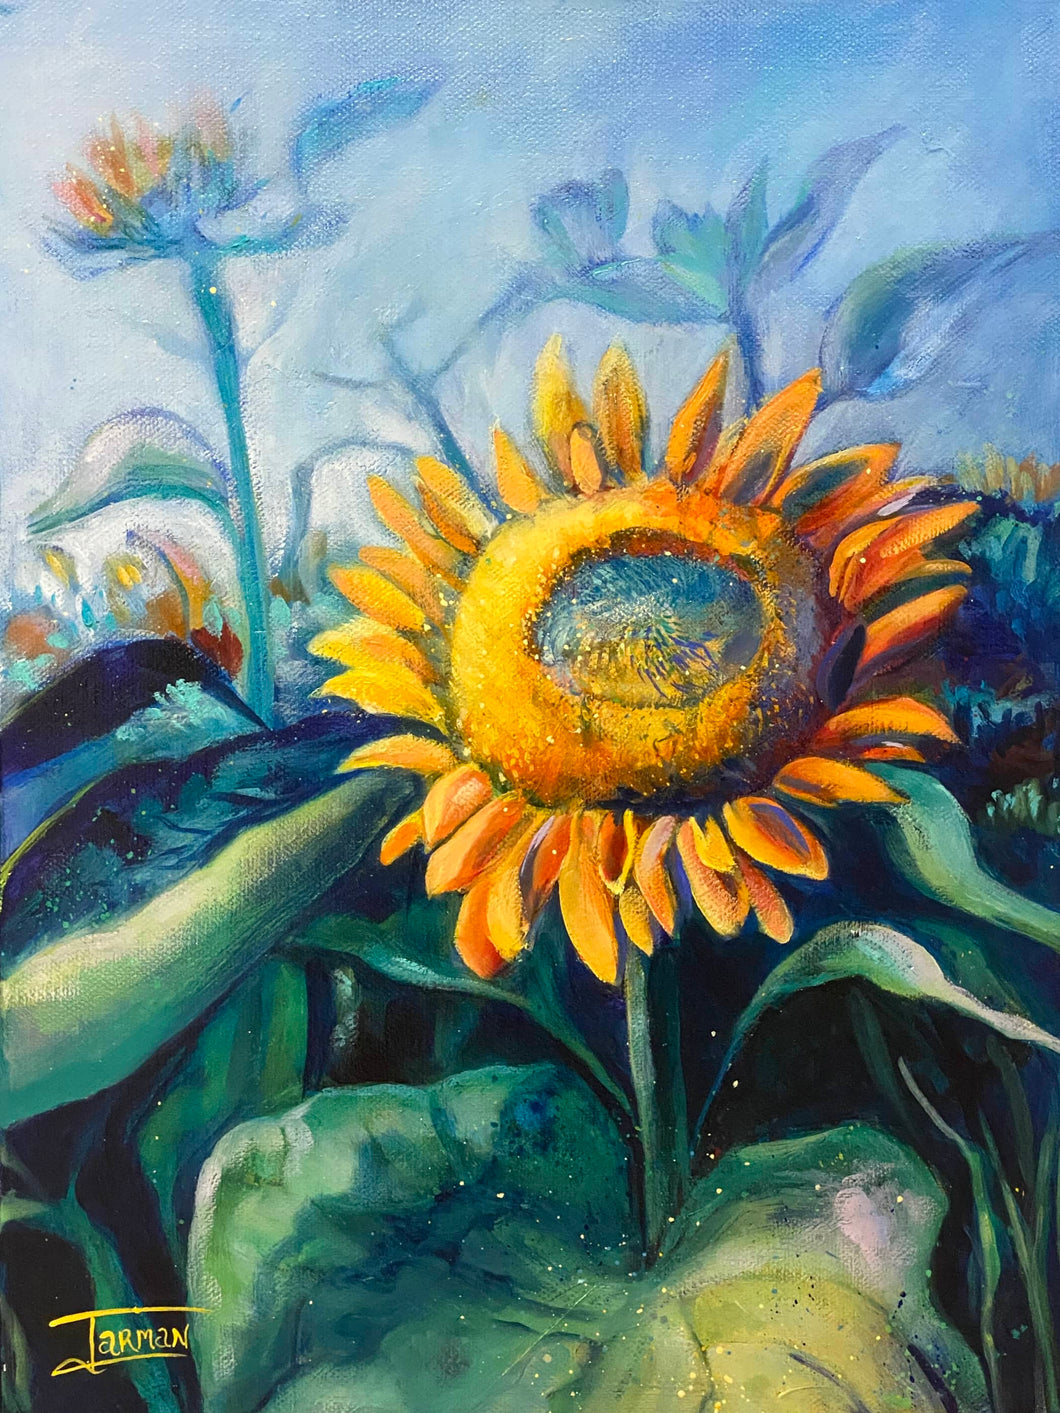 Sunflower, sunflower art, Van Gogh, Vincent, Sunflower field, sunflower petals, sunflowers, sunflower painting, painting of sunflowers, art of the sunflower, yellow and blue sunflower